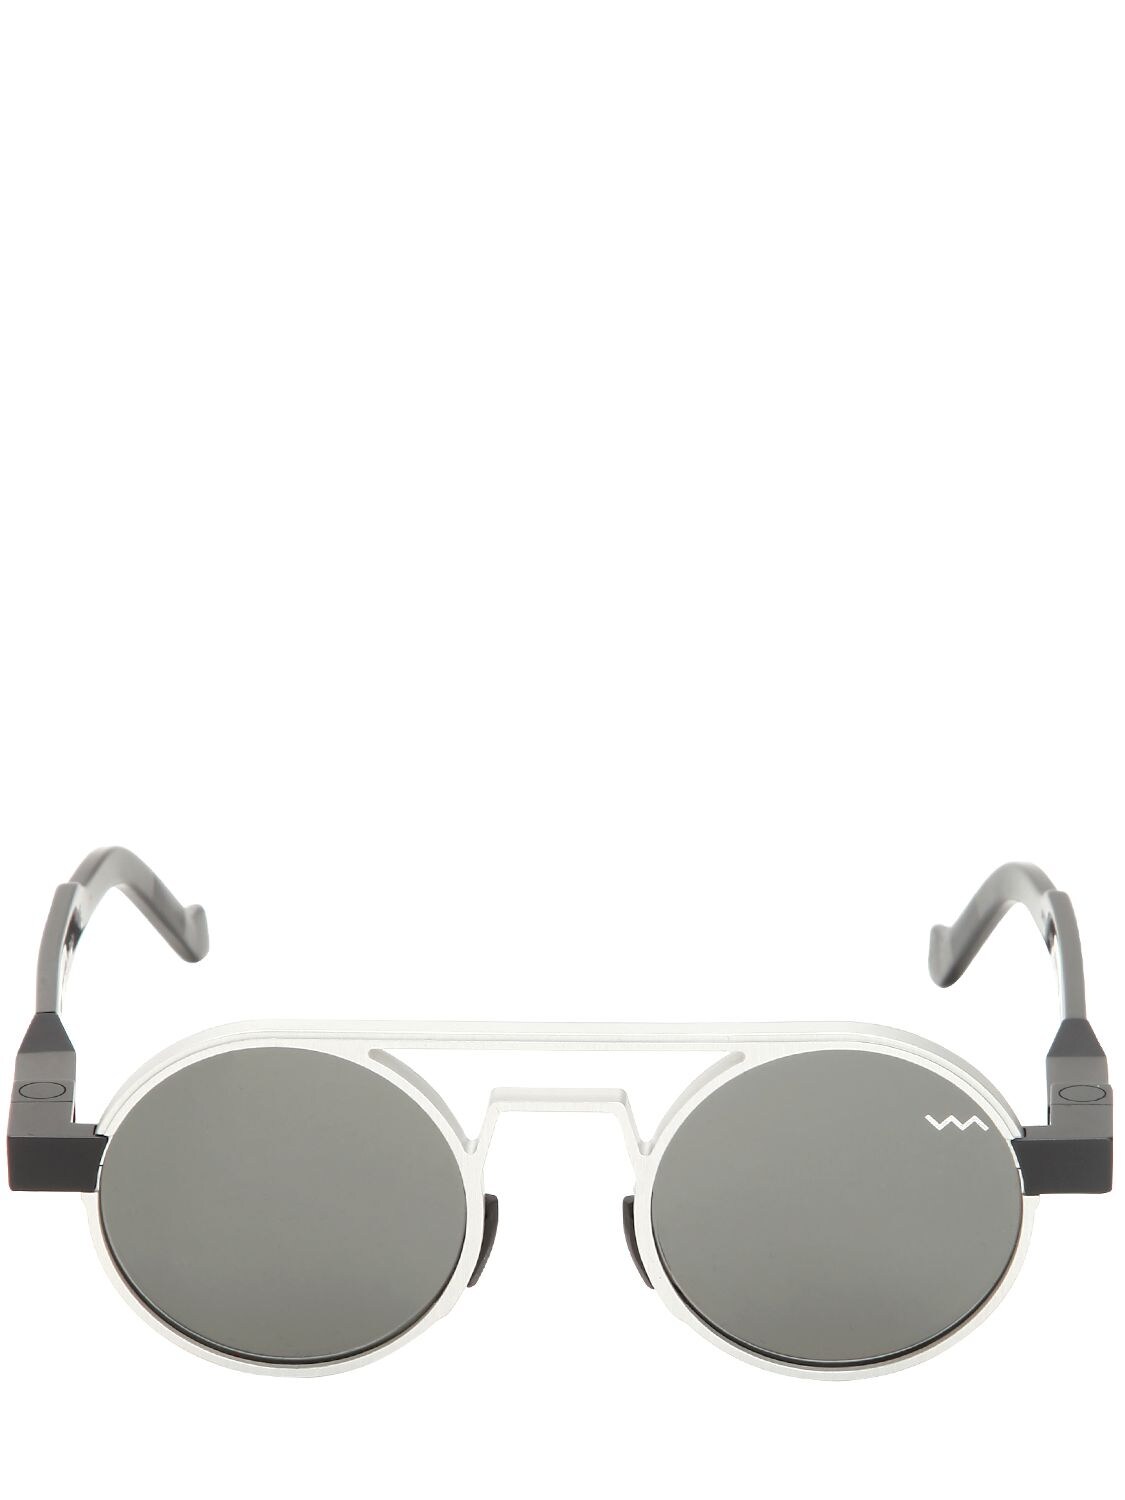 Vava Two Tone Double Bridge Sunglasses In Black